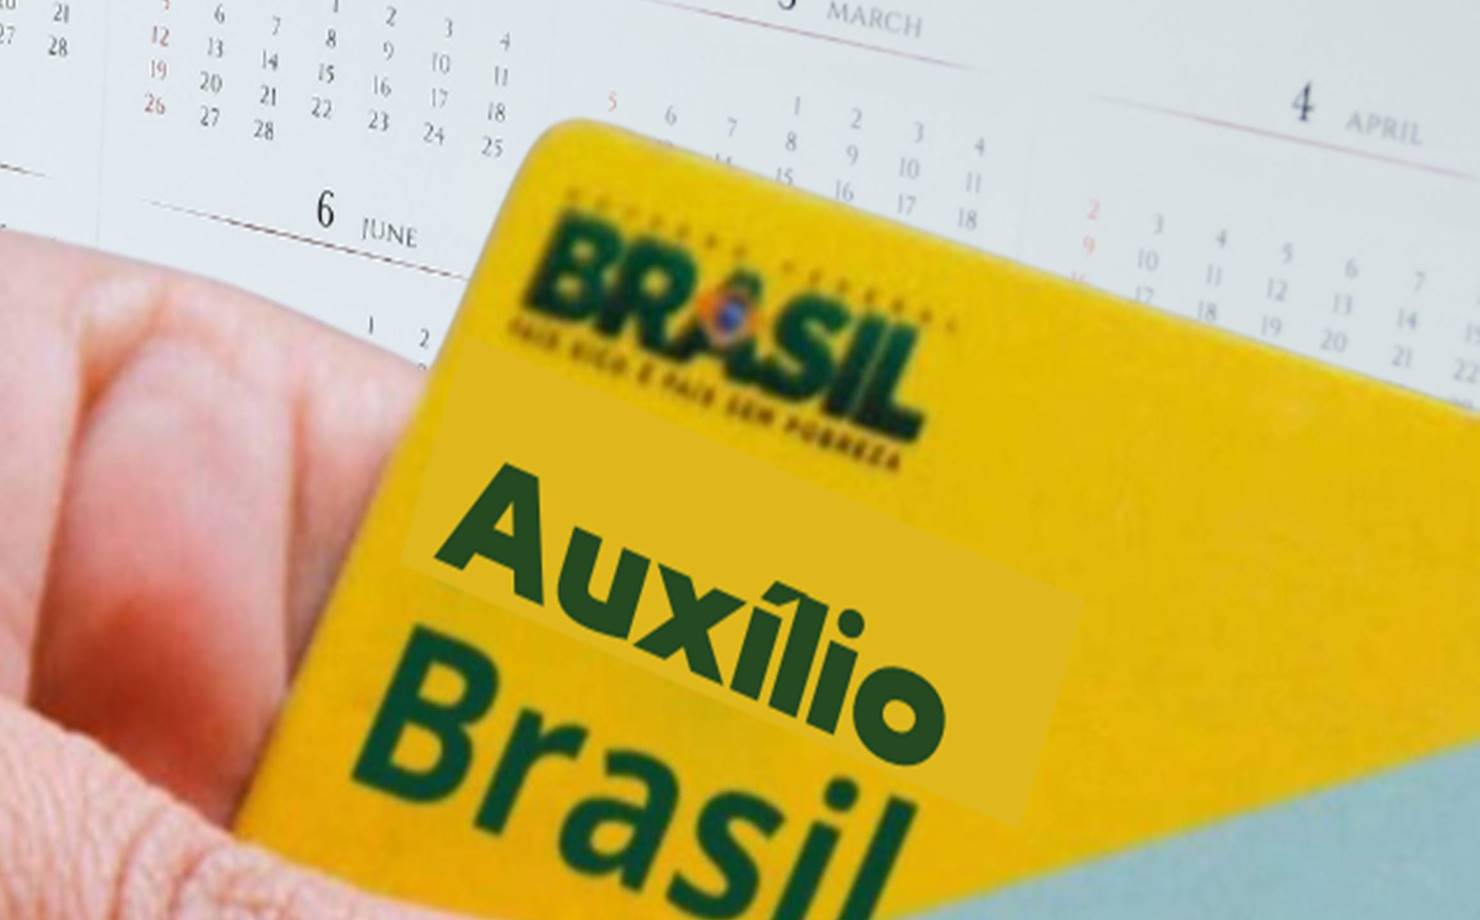 Moradores do RJ podem buscar nova vaga no AUXÍLIO BRASIL. Veja como se candidatar